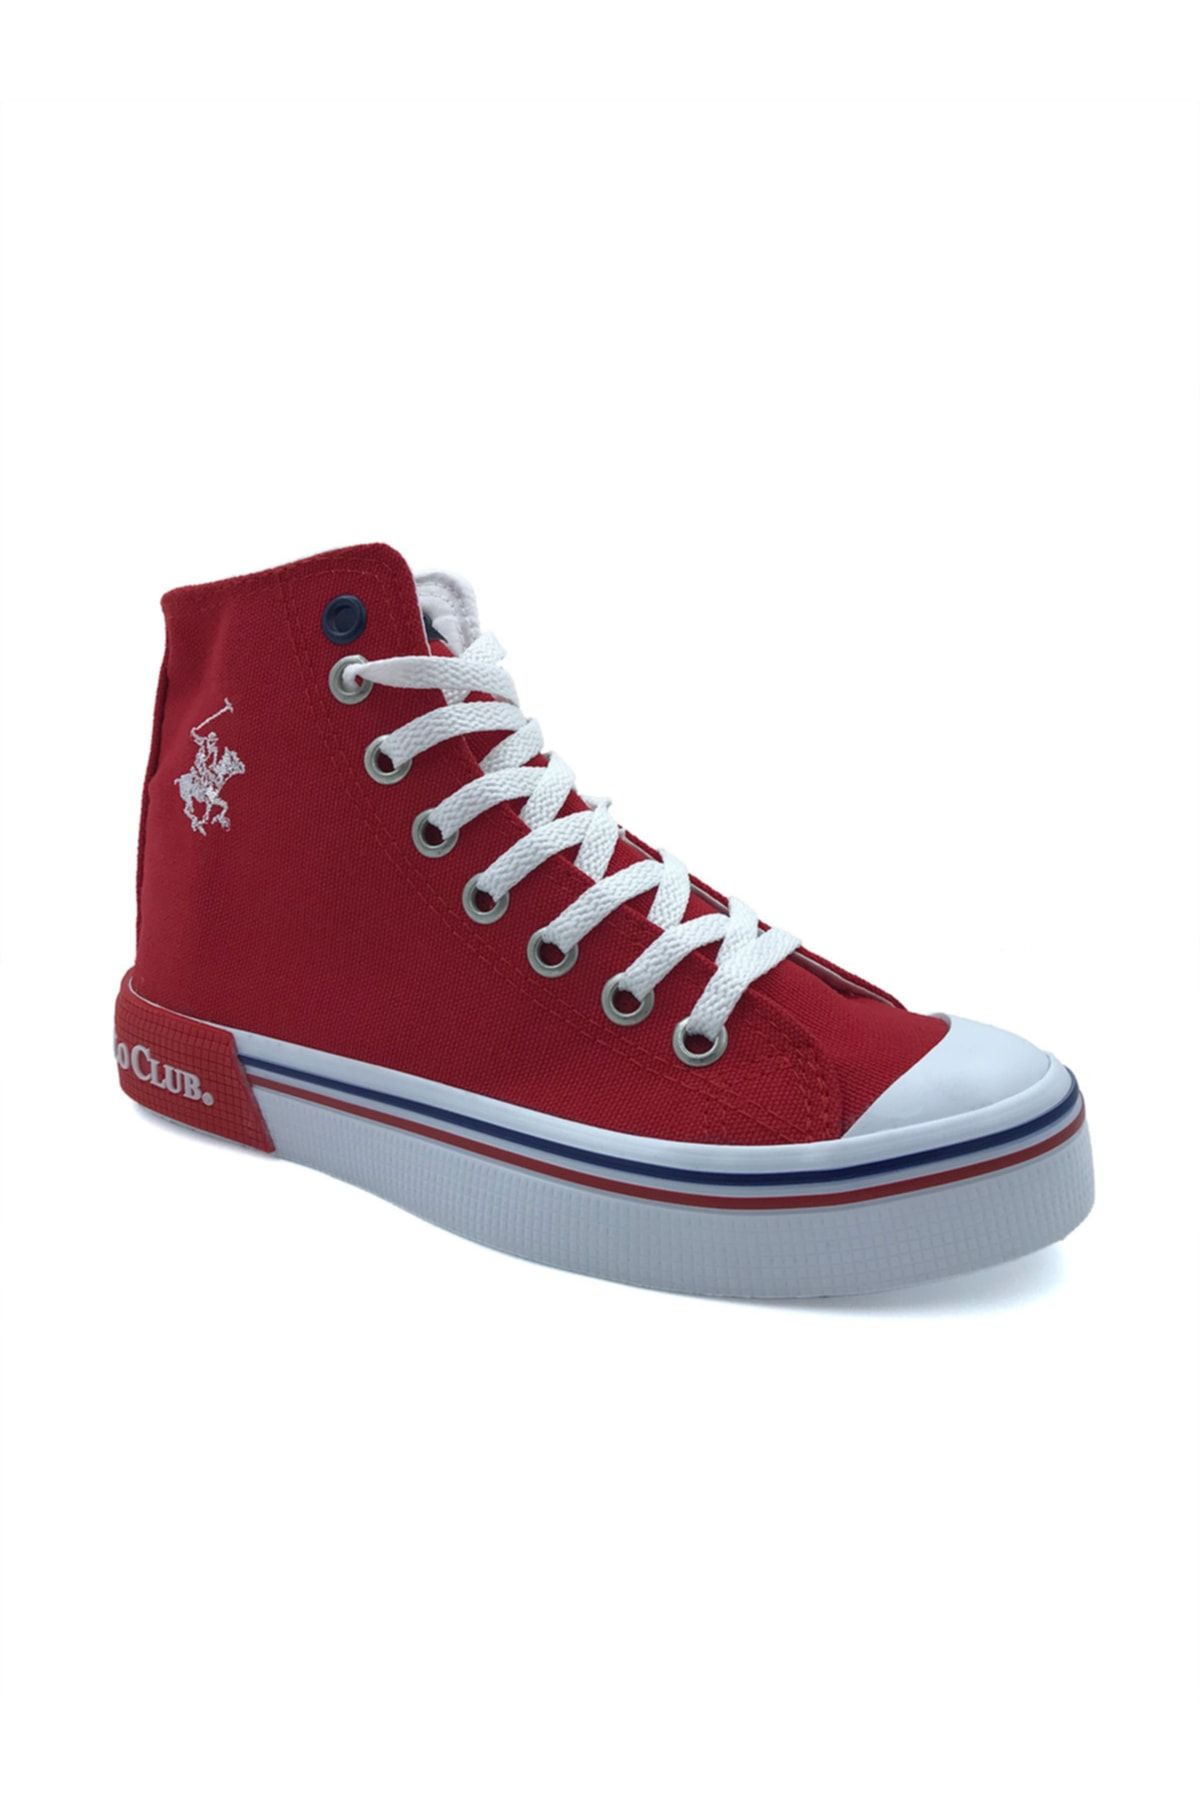 Beverly Hills Polo Club Kadın Kırmızı Sneakers Ayakkabı 10141